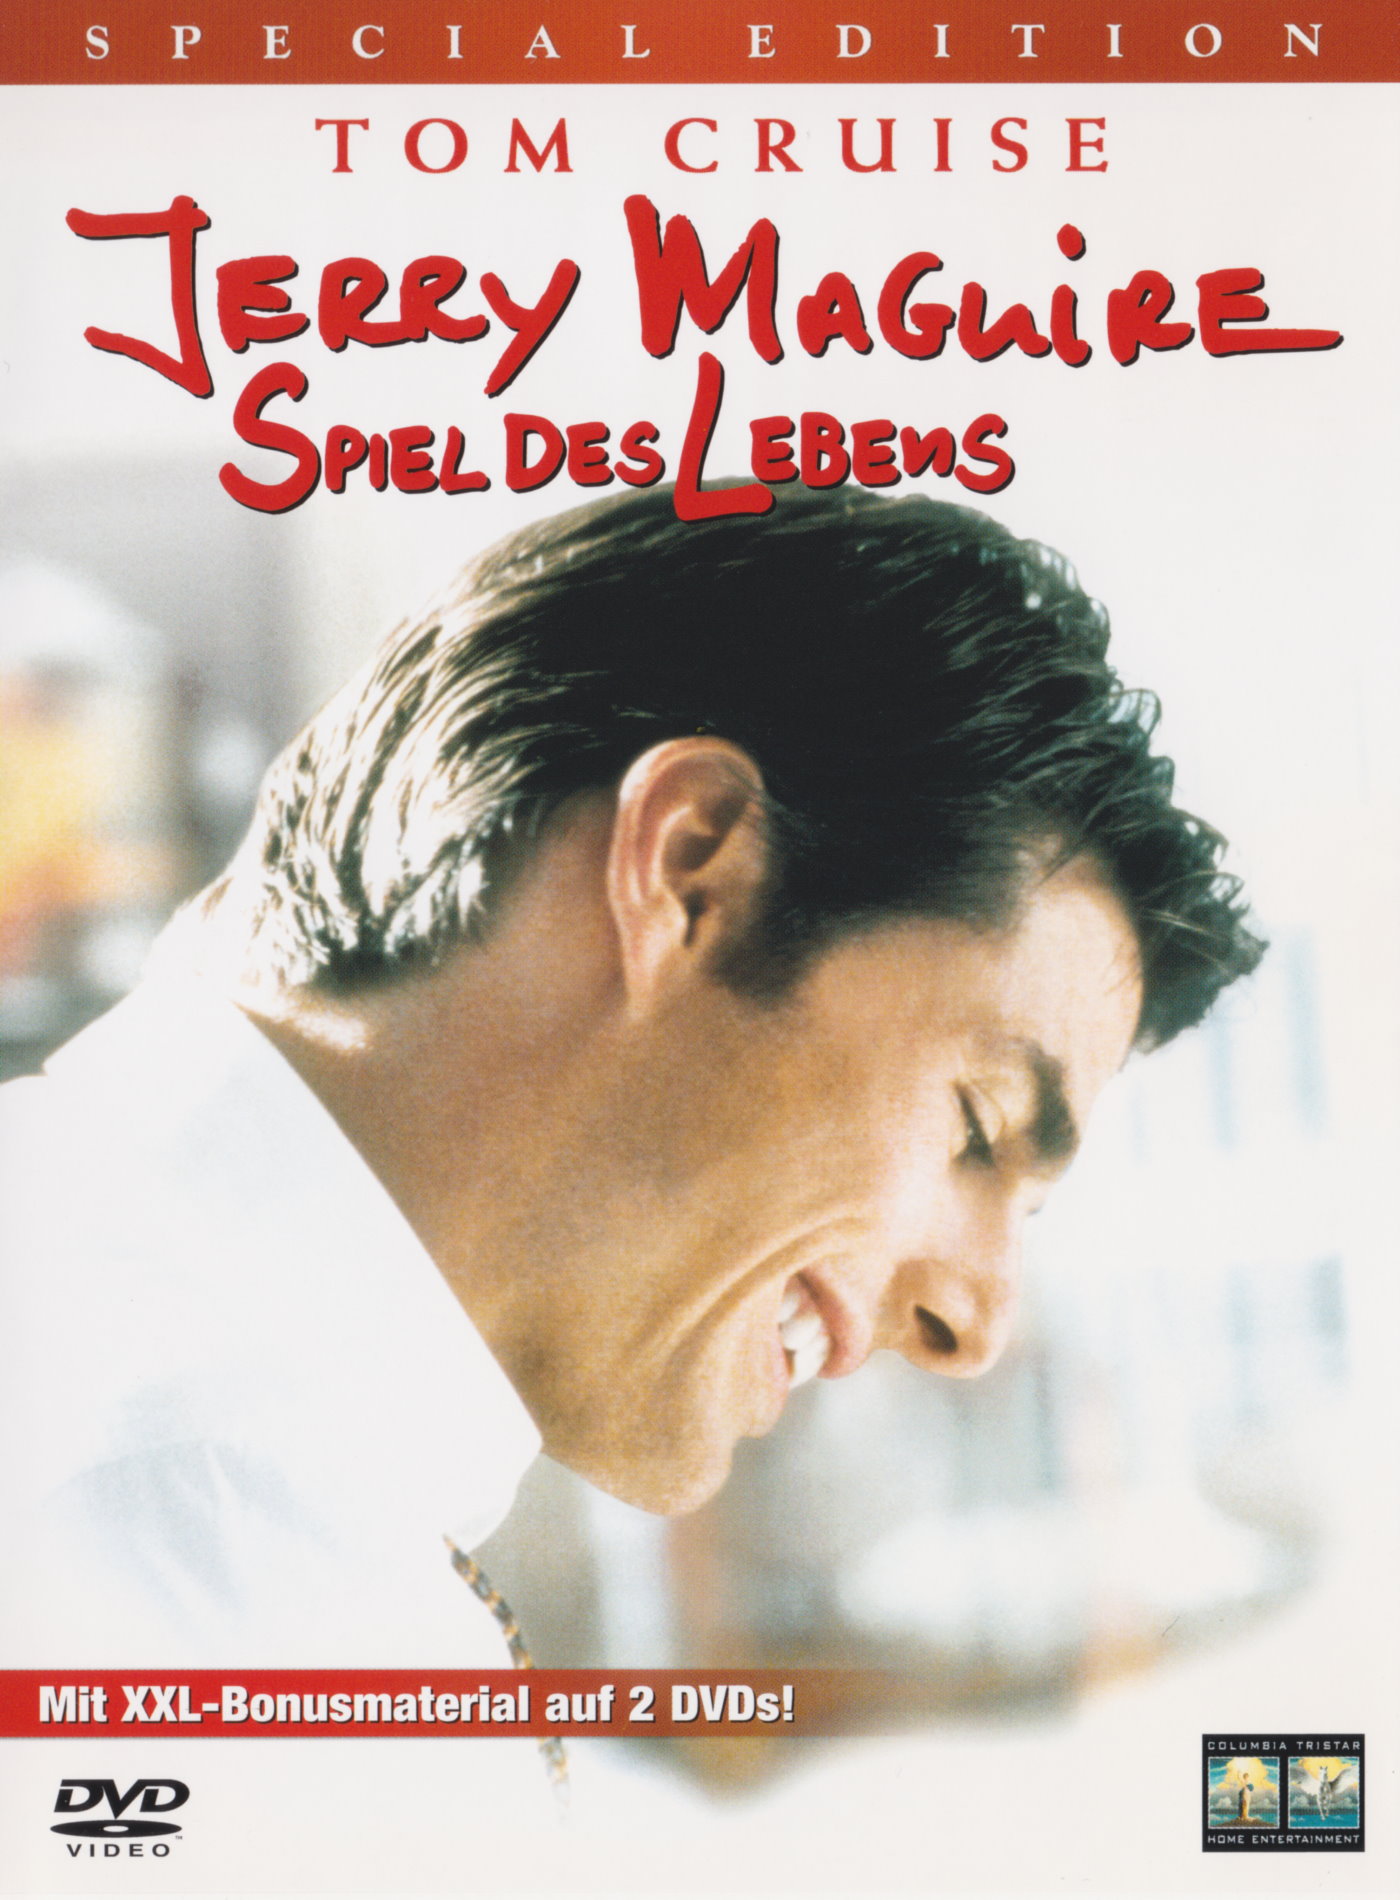 Cover - Jerry Maguire - Spiel des Lebens.jpg